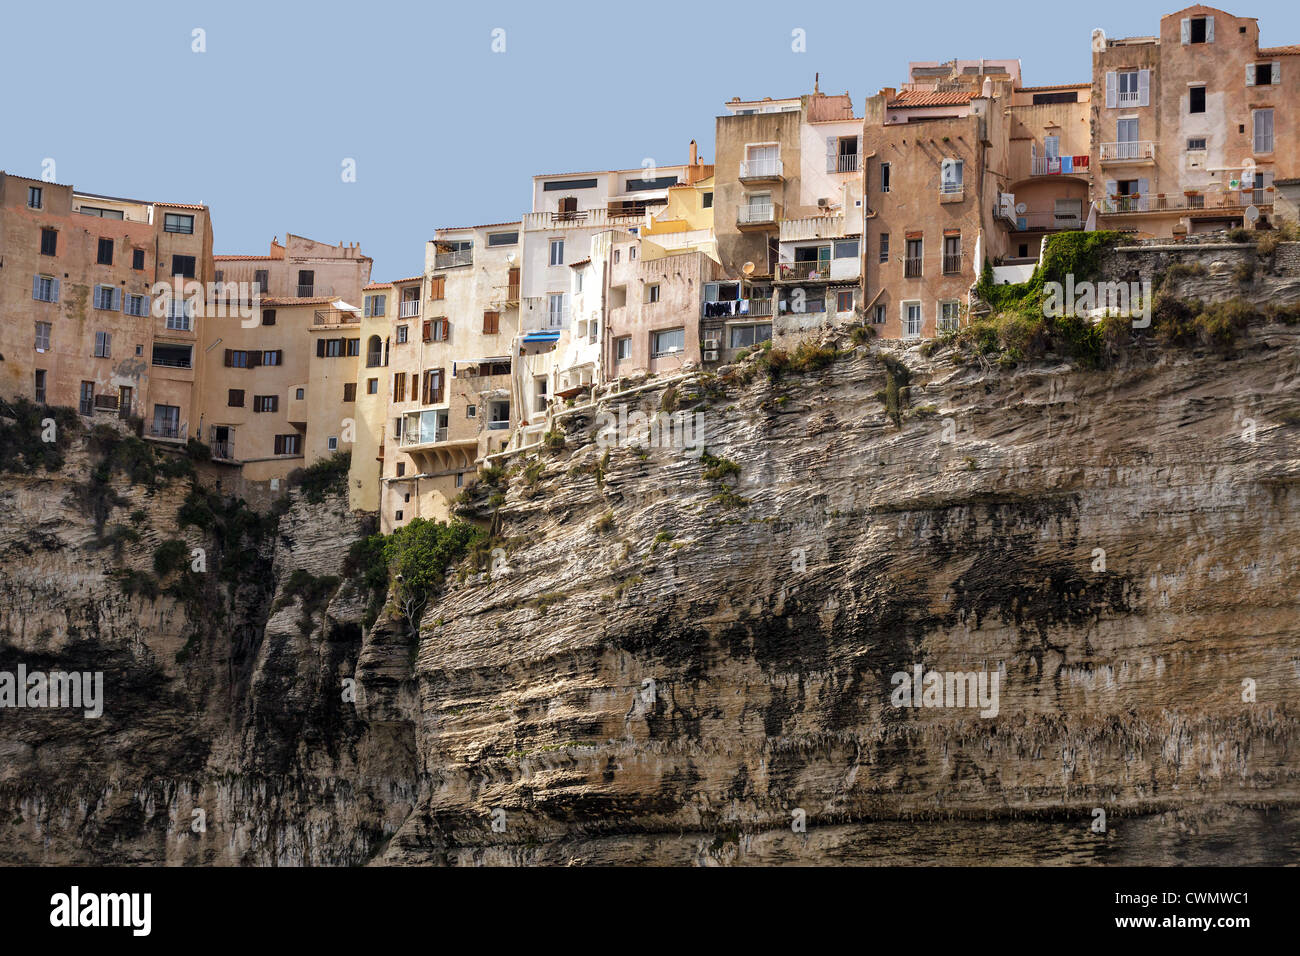 La ciudad de Bonifacio en el acantilado, Córcega, Francia Foto de stock